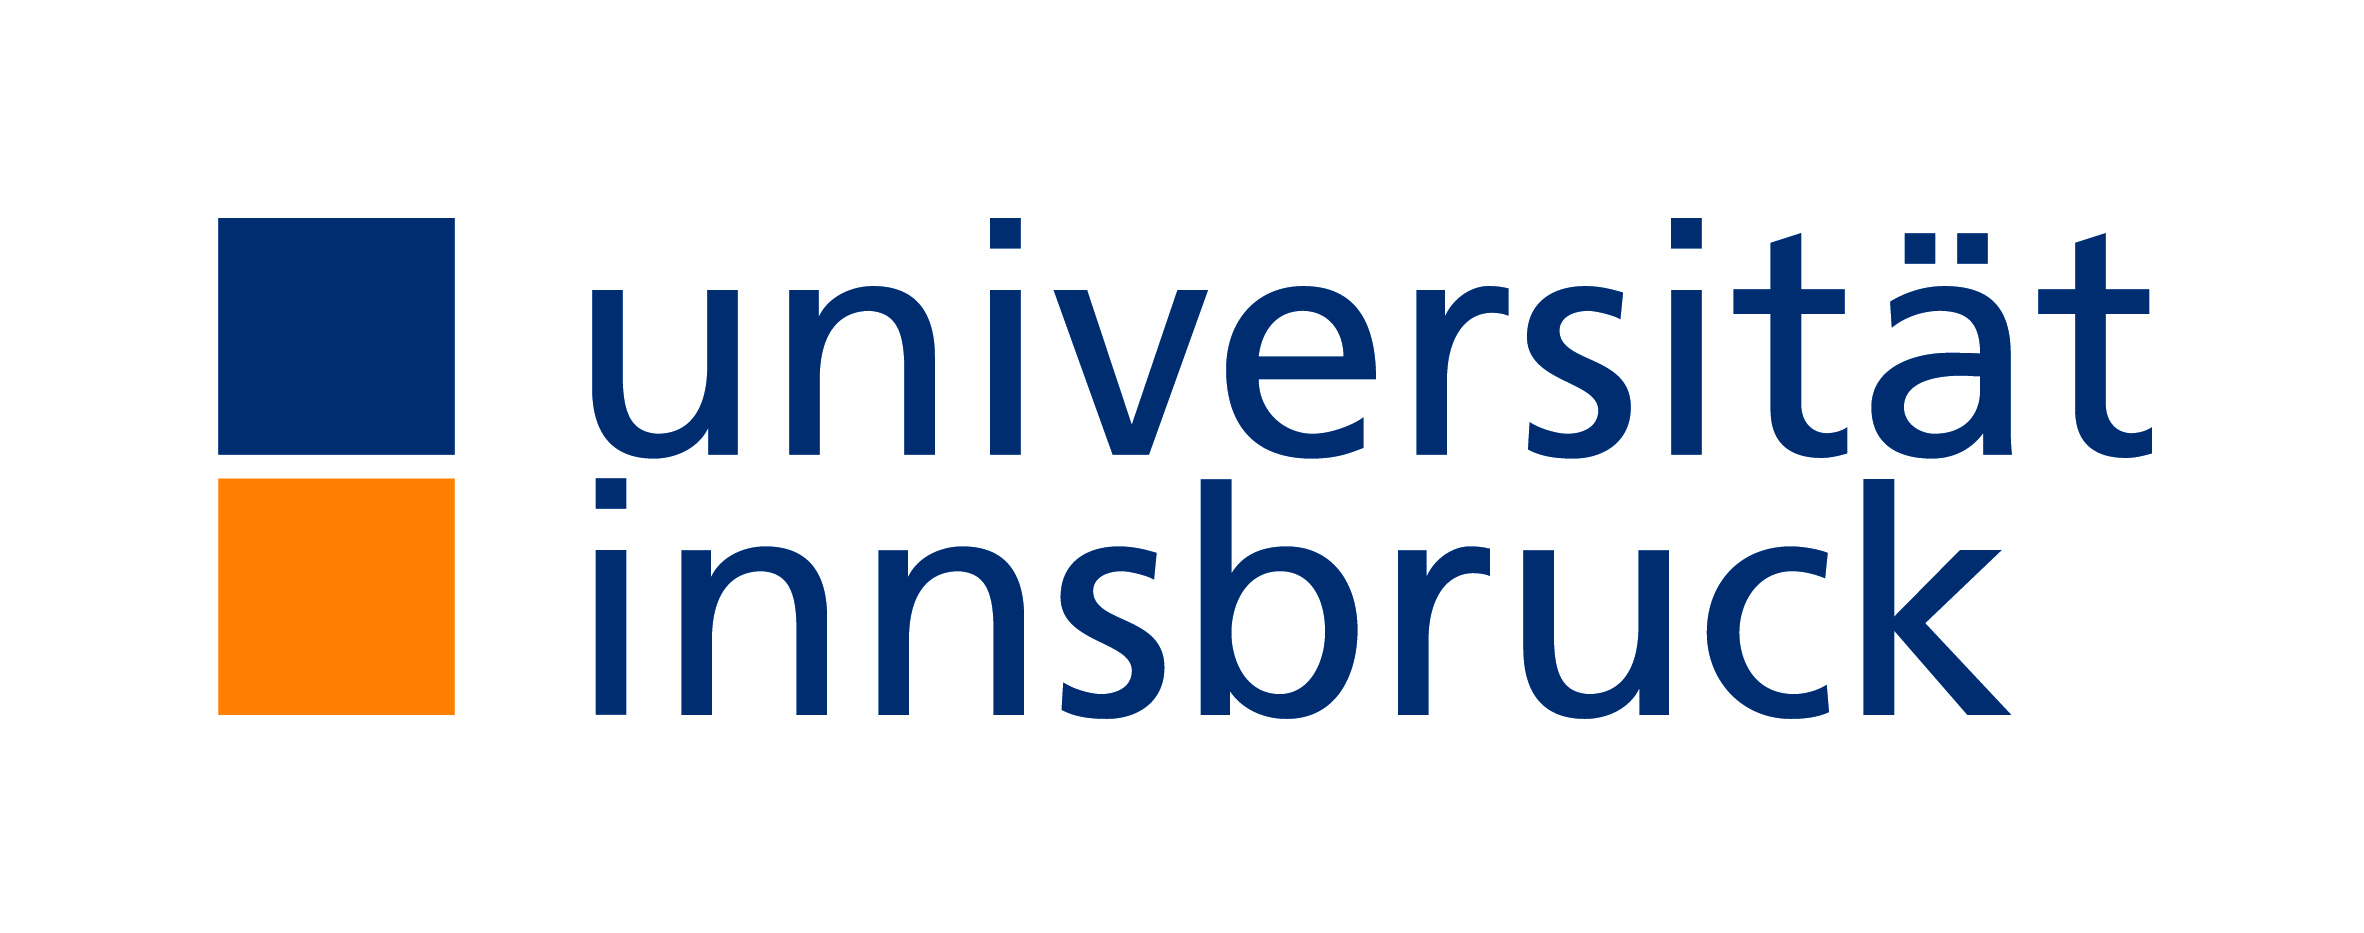 universitaet-innsbruck-logo